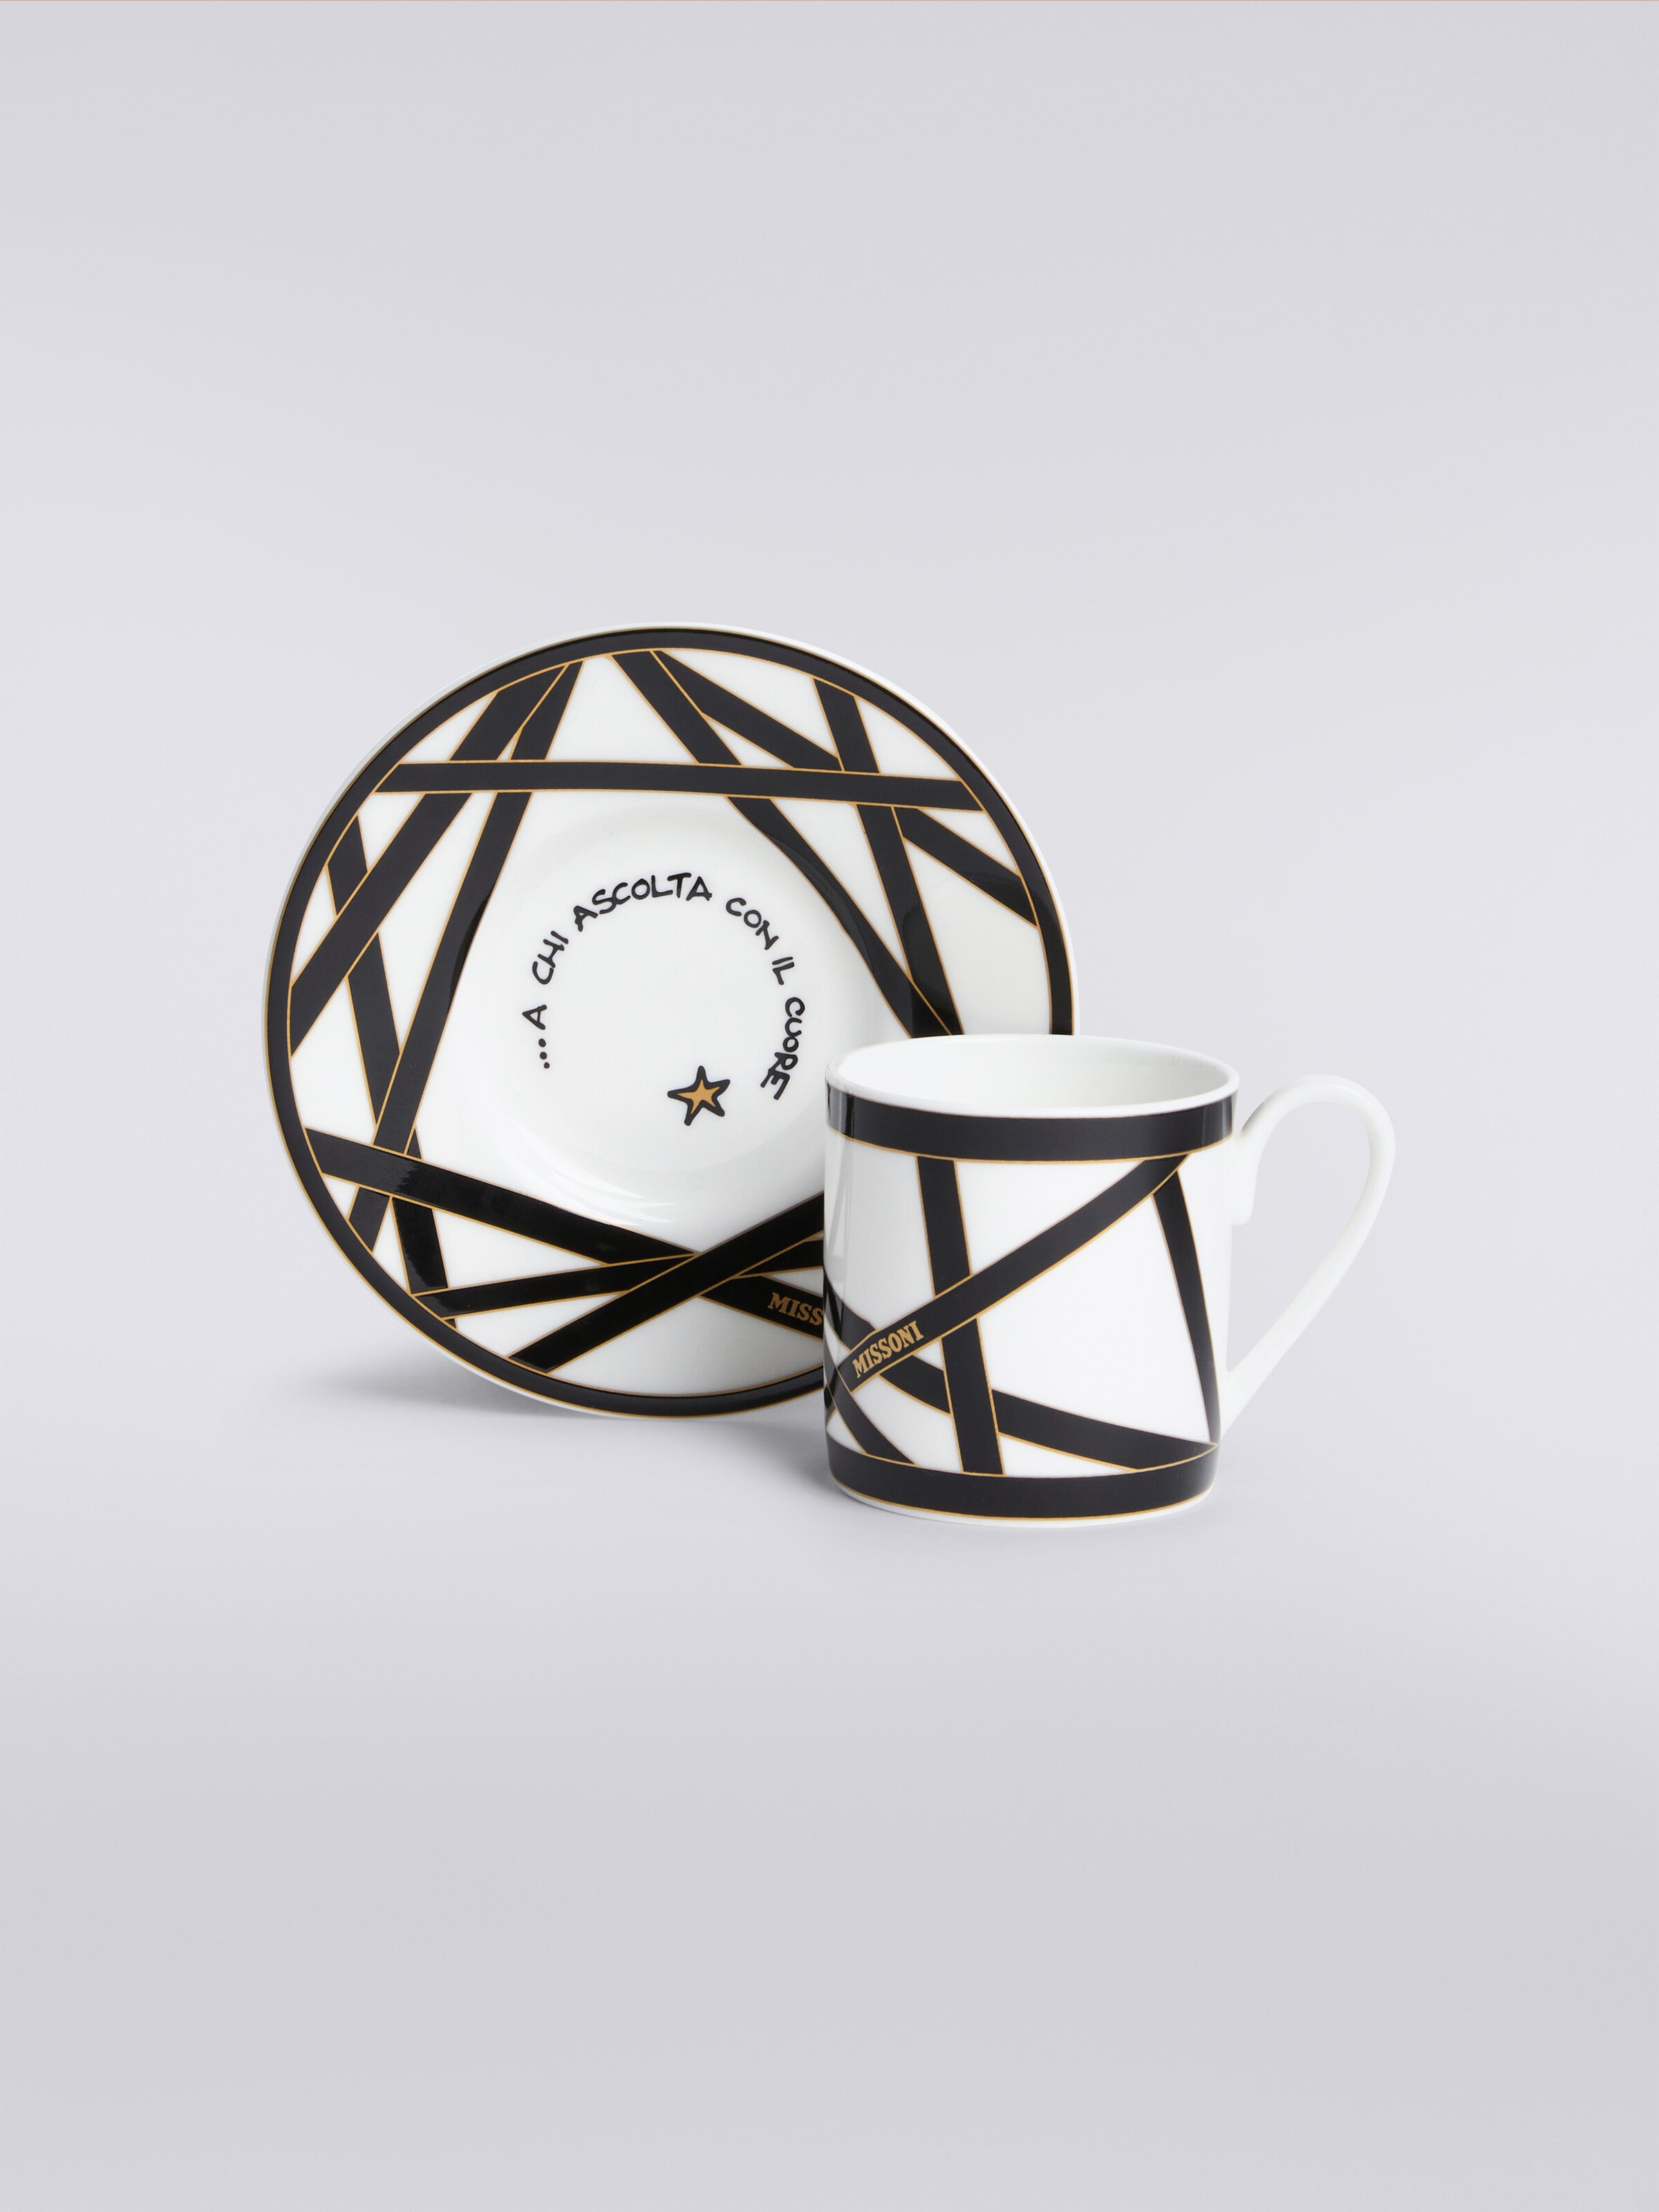 Missoni x Suonare Stella coffee cup and saucer set, Black & Multicoloured  - 1